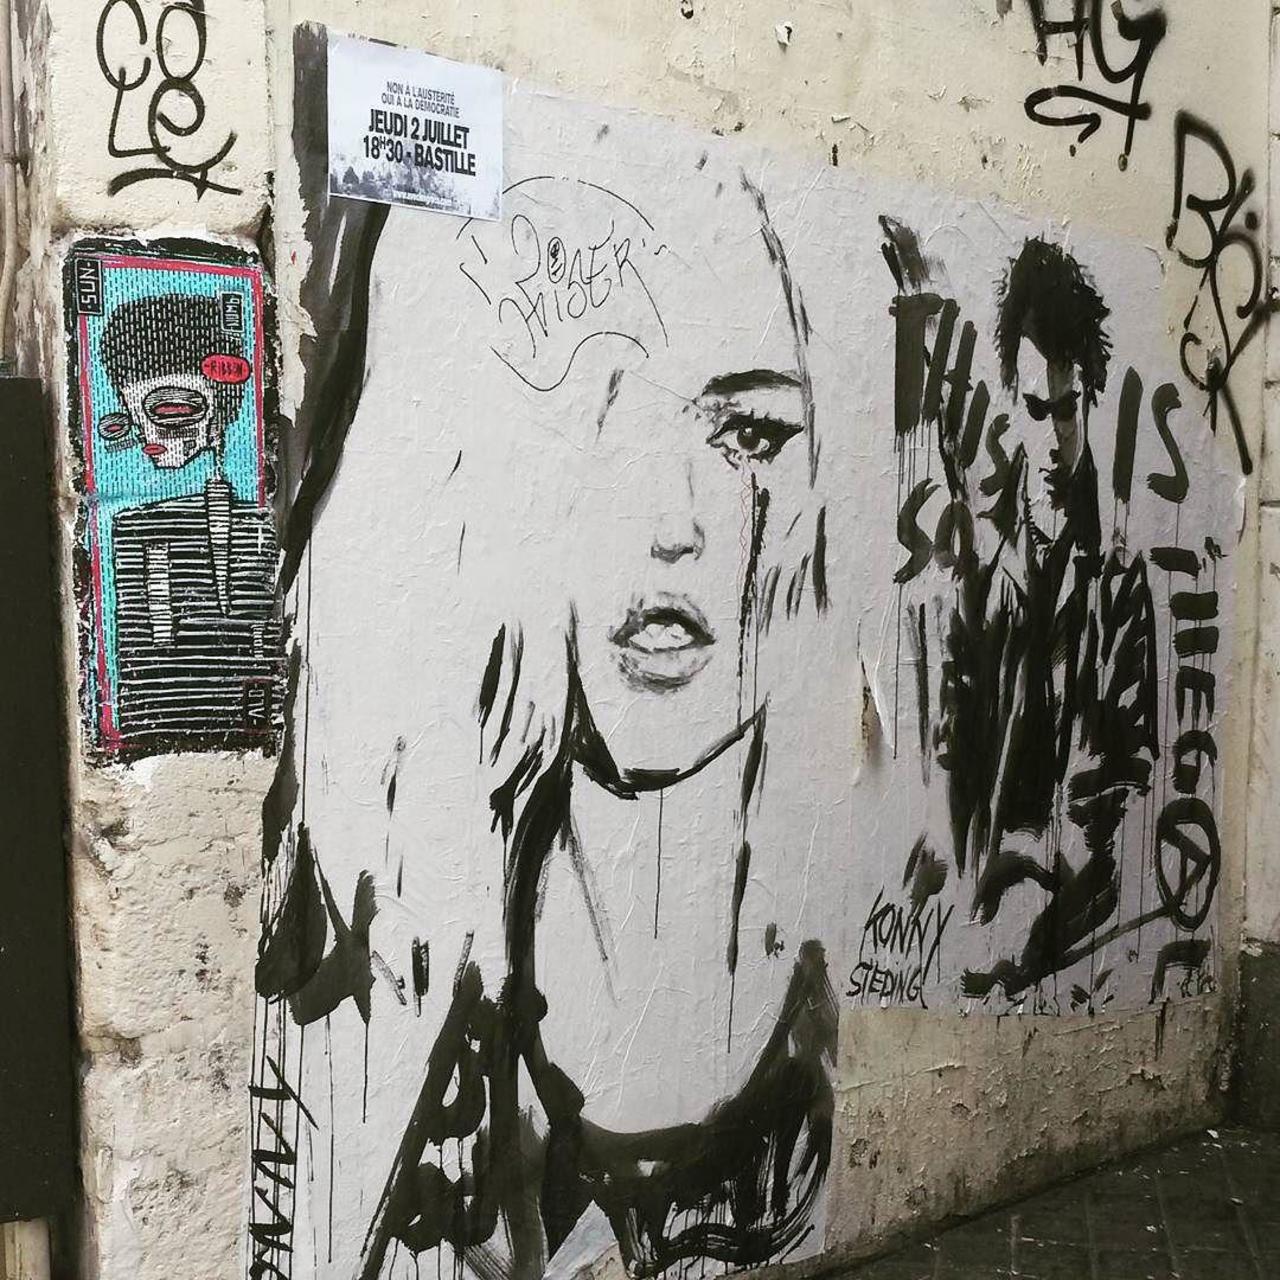 circumjacent_fr: #Paris #graffiti photo by le_cyclopede http://ift.tt/1KWqszu #StreetArt http://t.co/zvpCHgQ7oJ